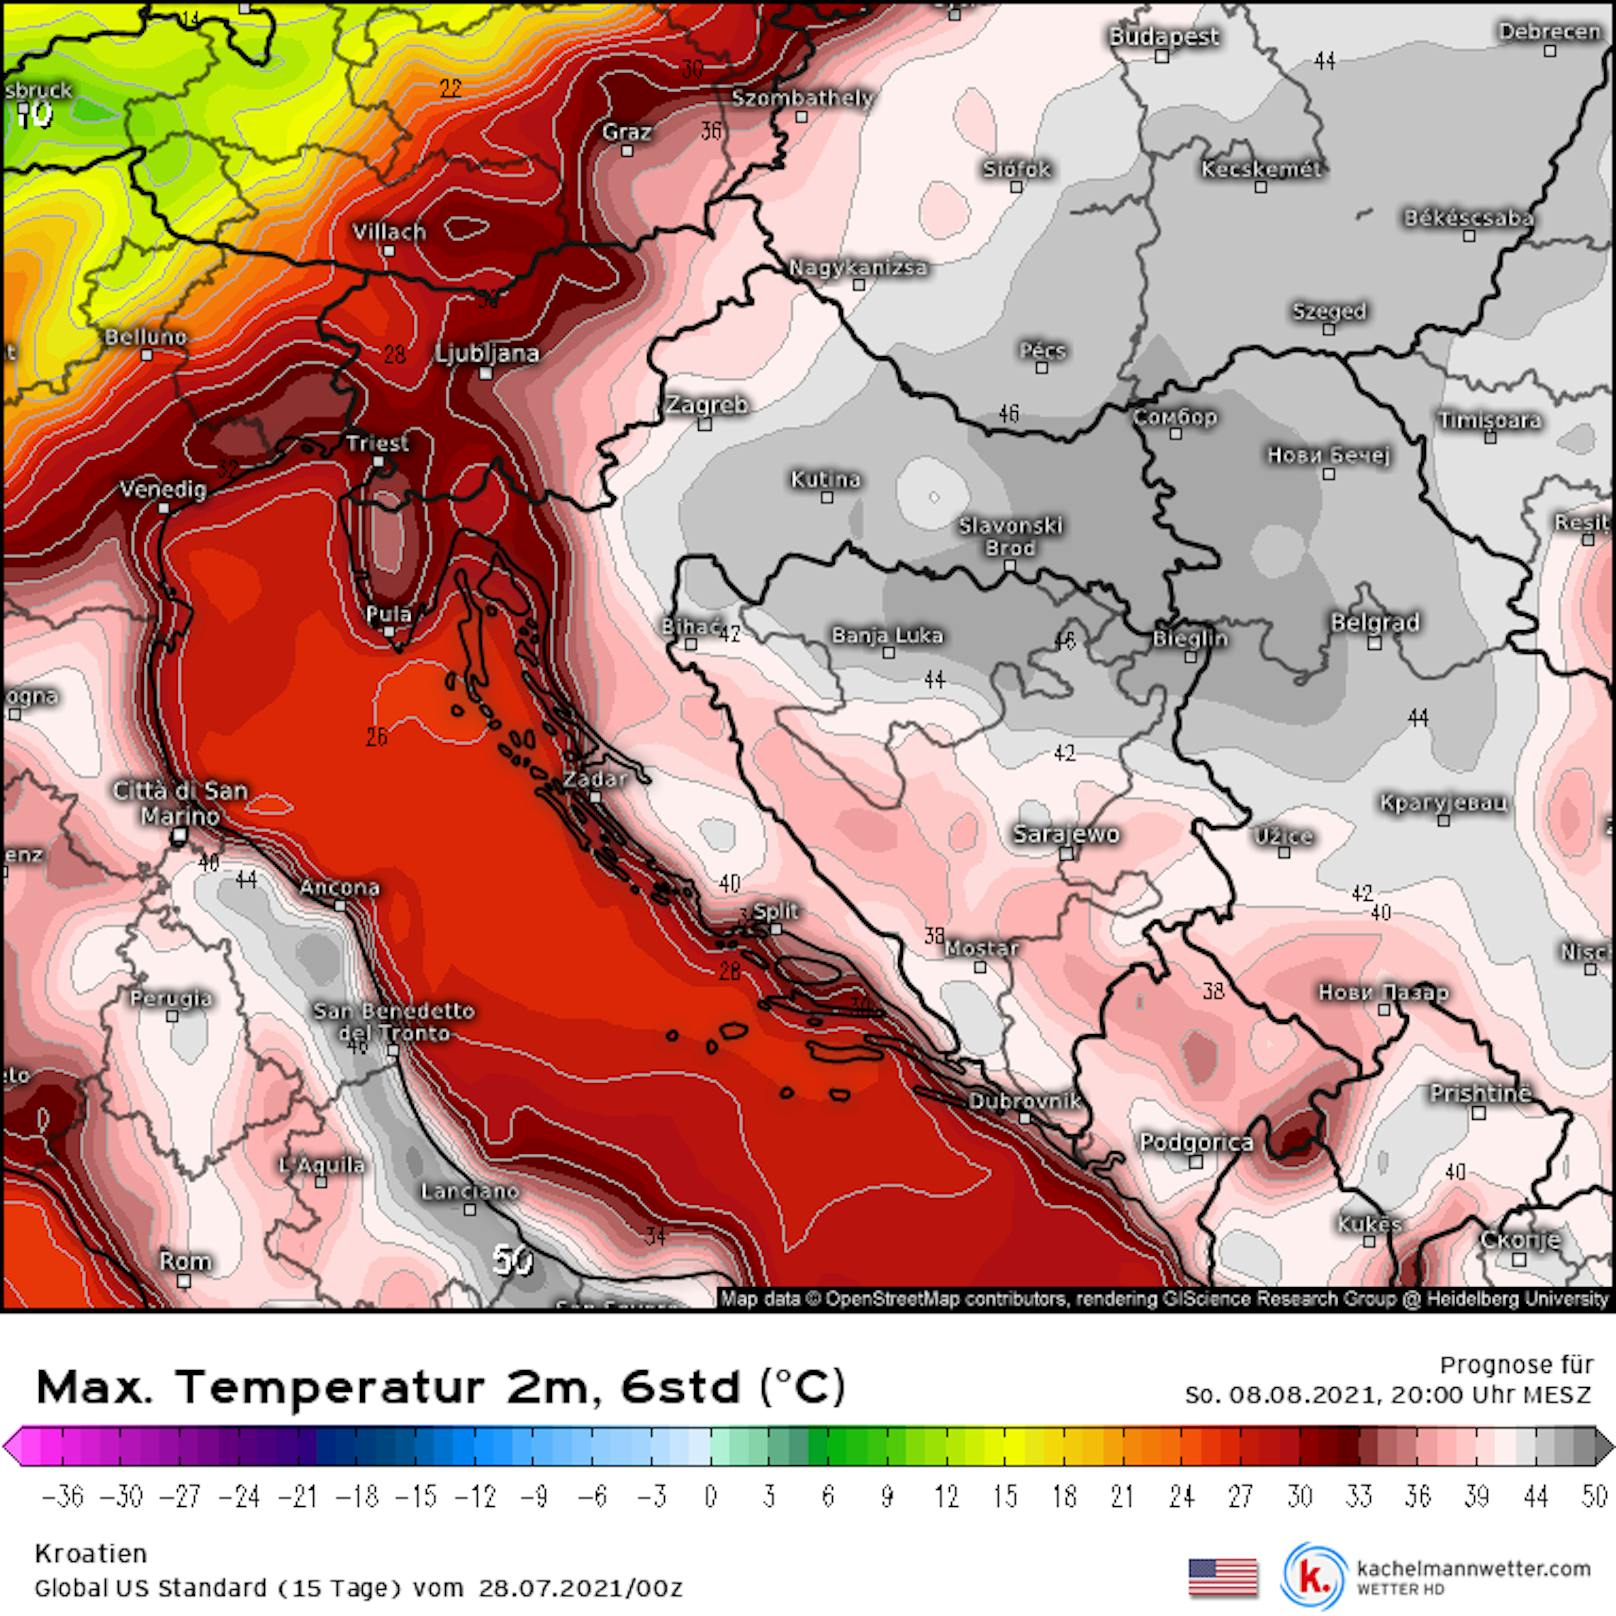 Auch der Balkan wird unter der Hitze ächzen: Besonders im Dreiländereck Kroatien, Serbien und Bosnien-Herzegowina soll sich die Luft auf bis zu 48 Grad aufheizen.